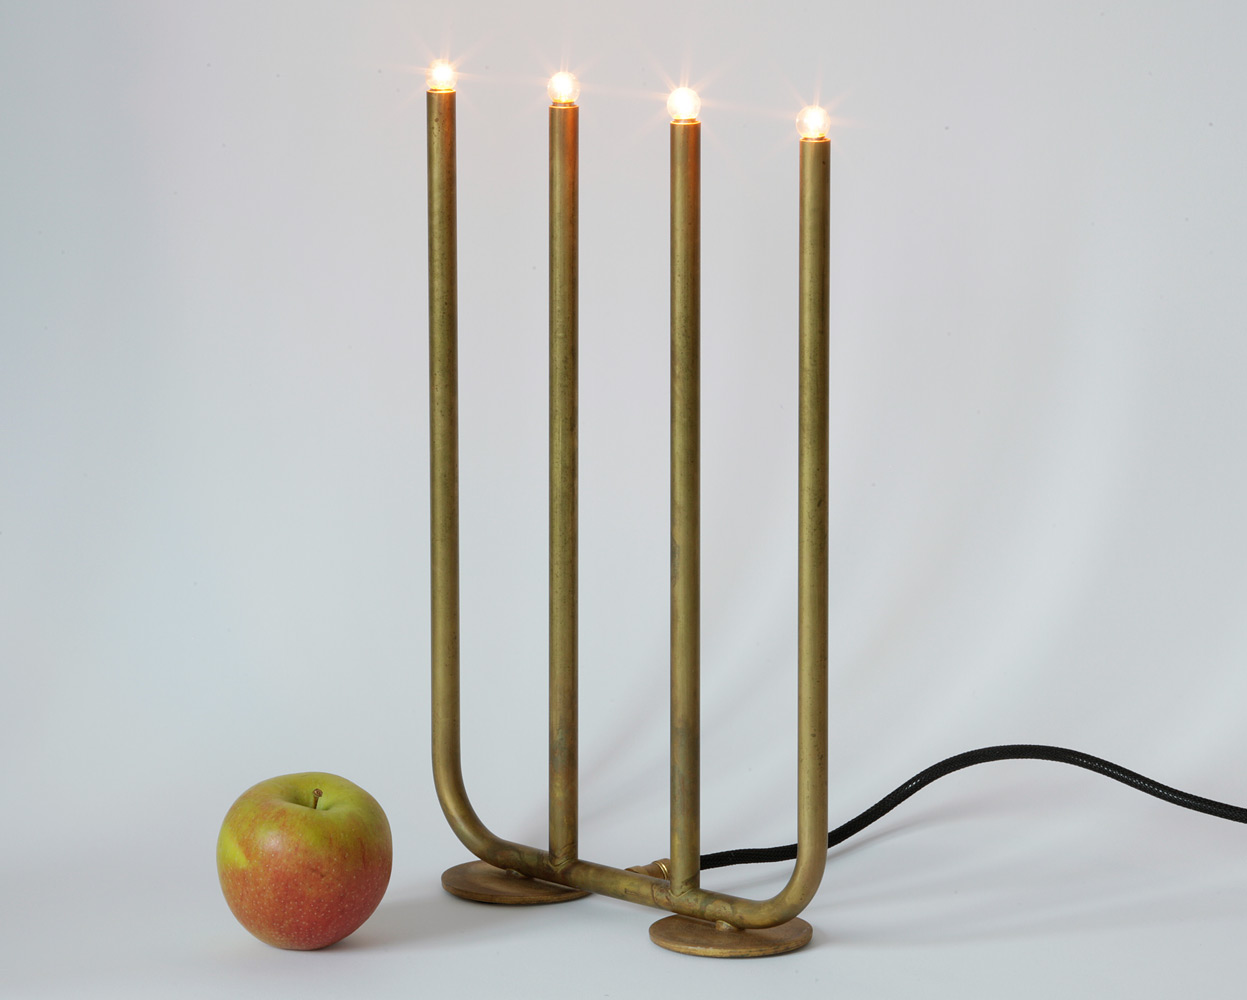 Tisch-Leuchter ADVENT aus der schwedischen Manufaktur KH Verkstad, roh belassenes Messing